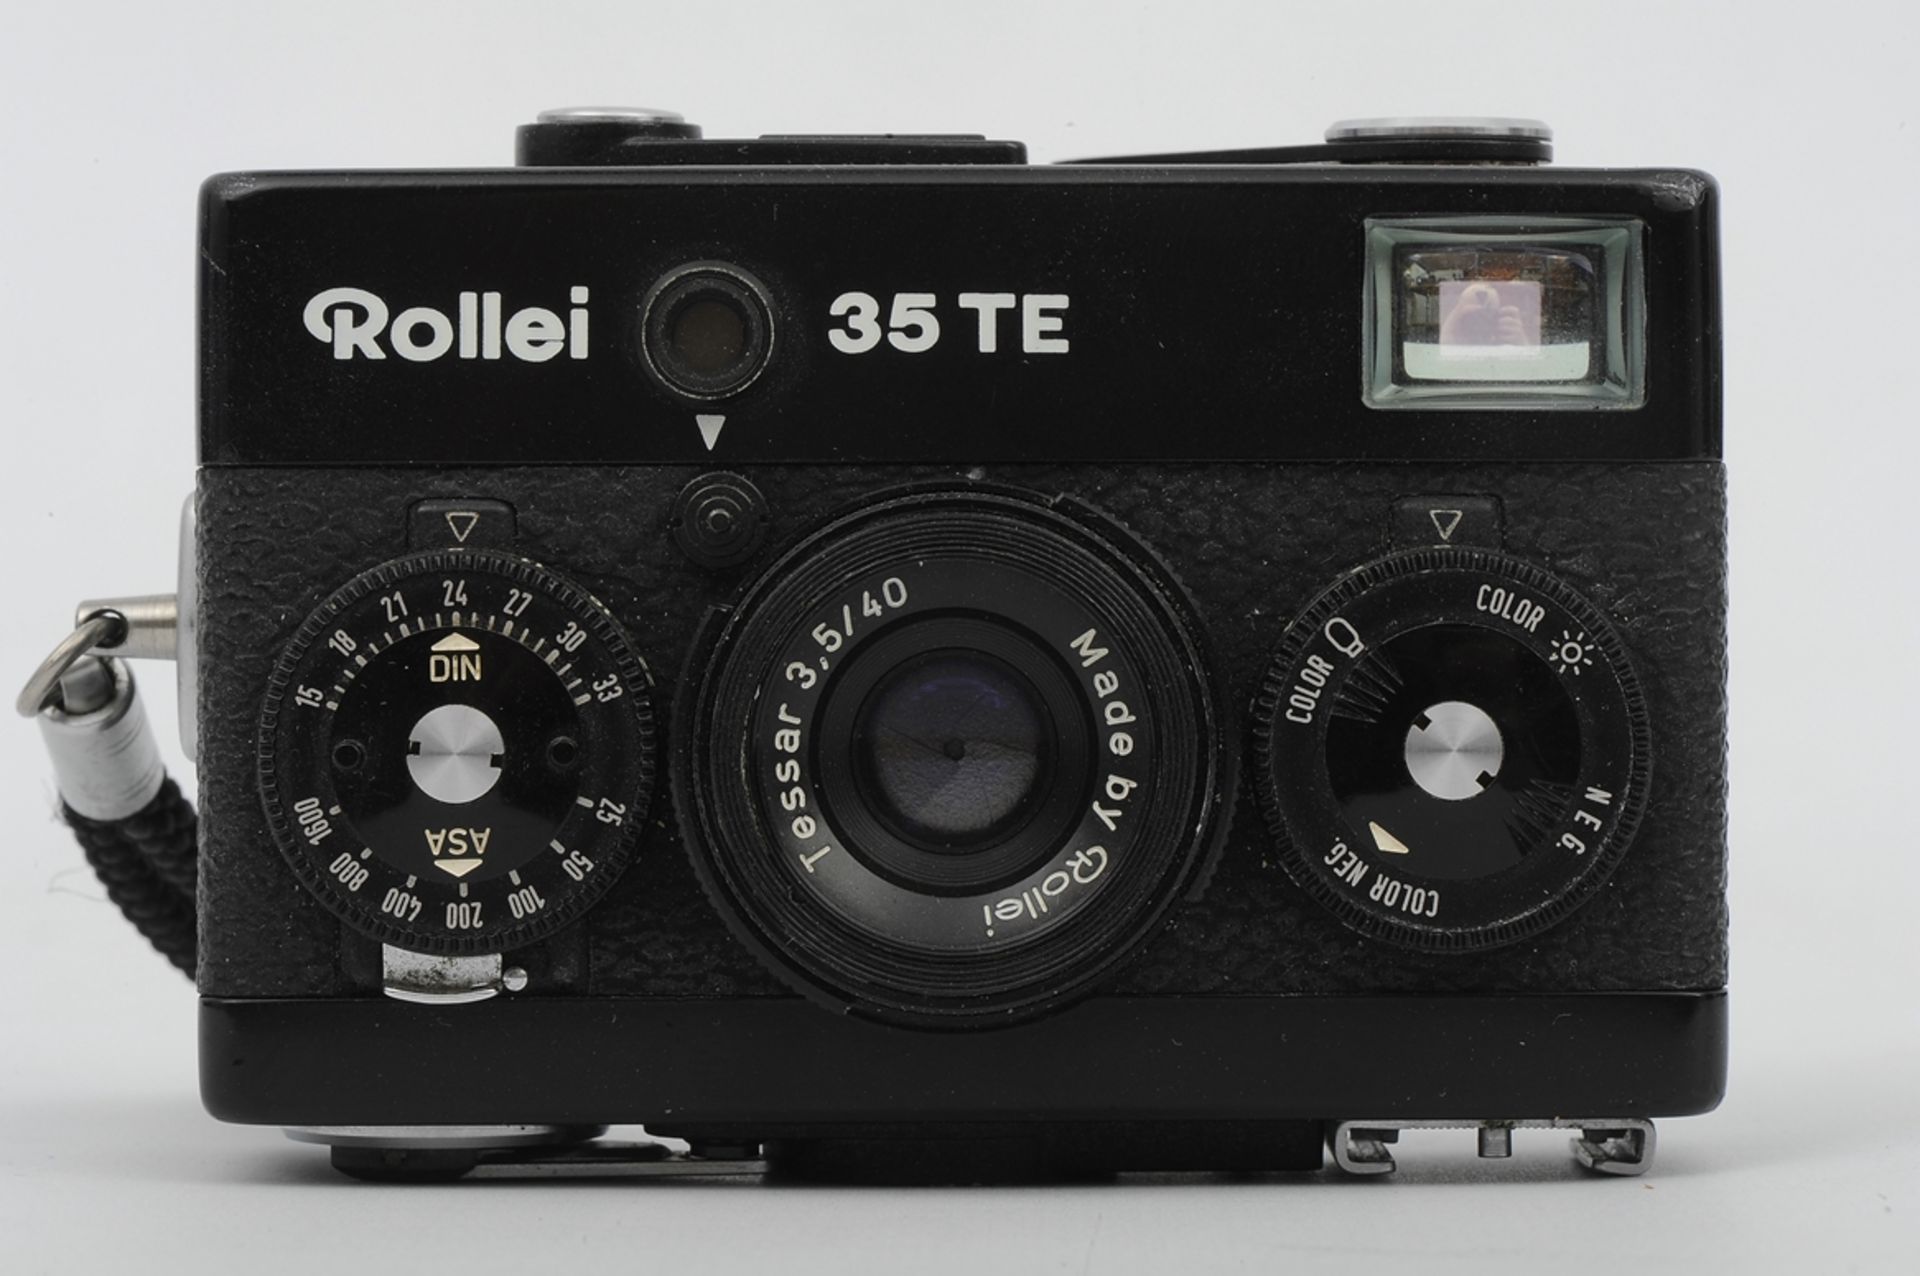 6teiliges Konvolut "ROLLEI" - Kameras und Zubehör, bestehend aus: 1 x 35T (unvollendete Reparatur), - Image 4 of 19